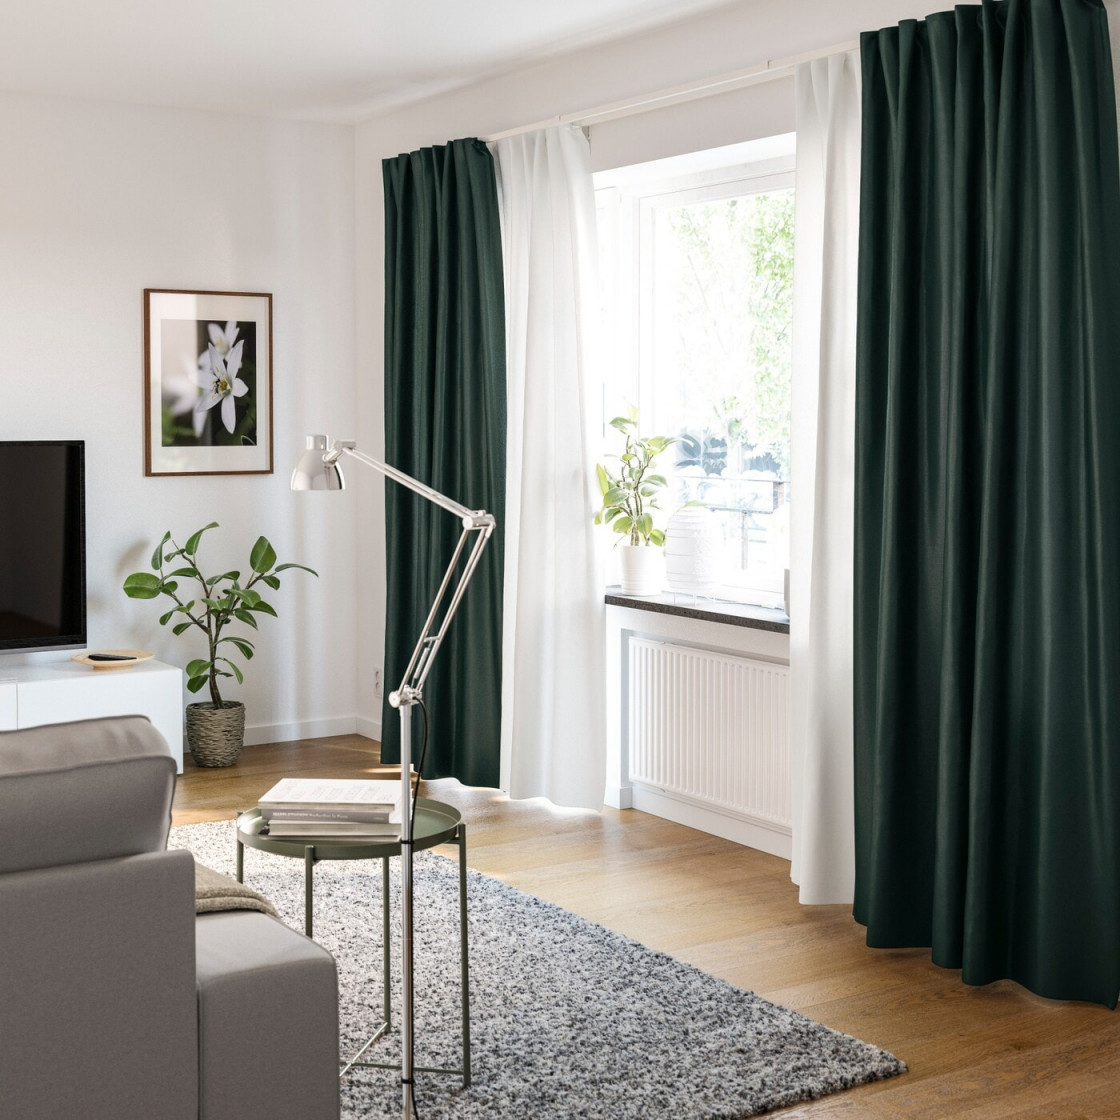 Gardinenideen Inspirationen Für Dein Zuhause  Ikea von Gardinen Ideen Für Wohnzimmer Photo